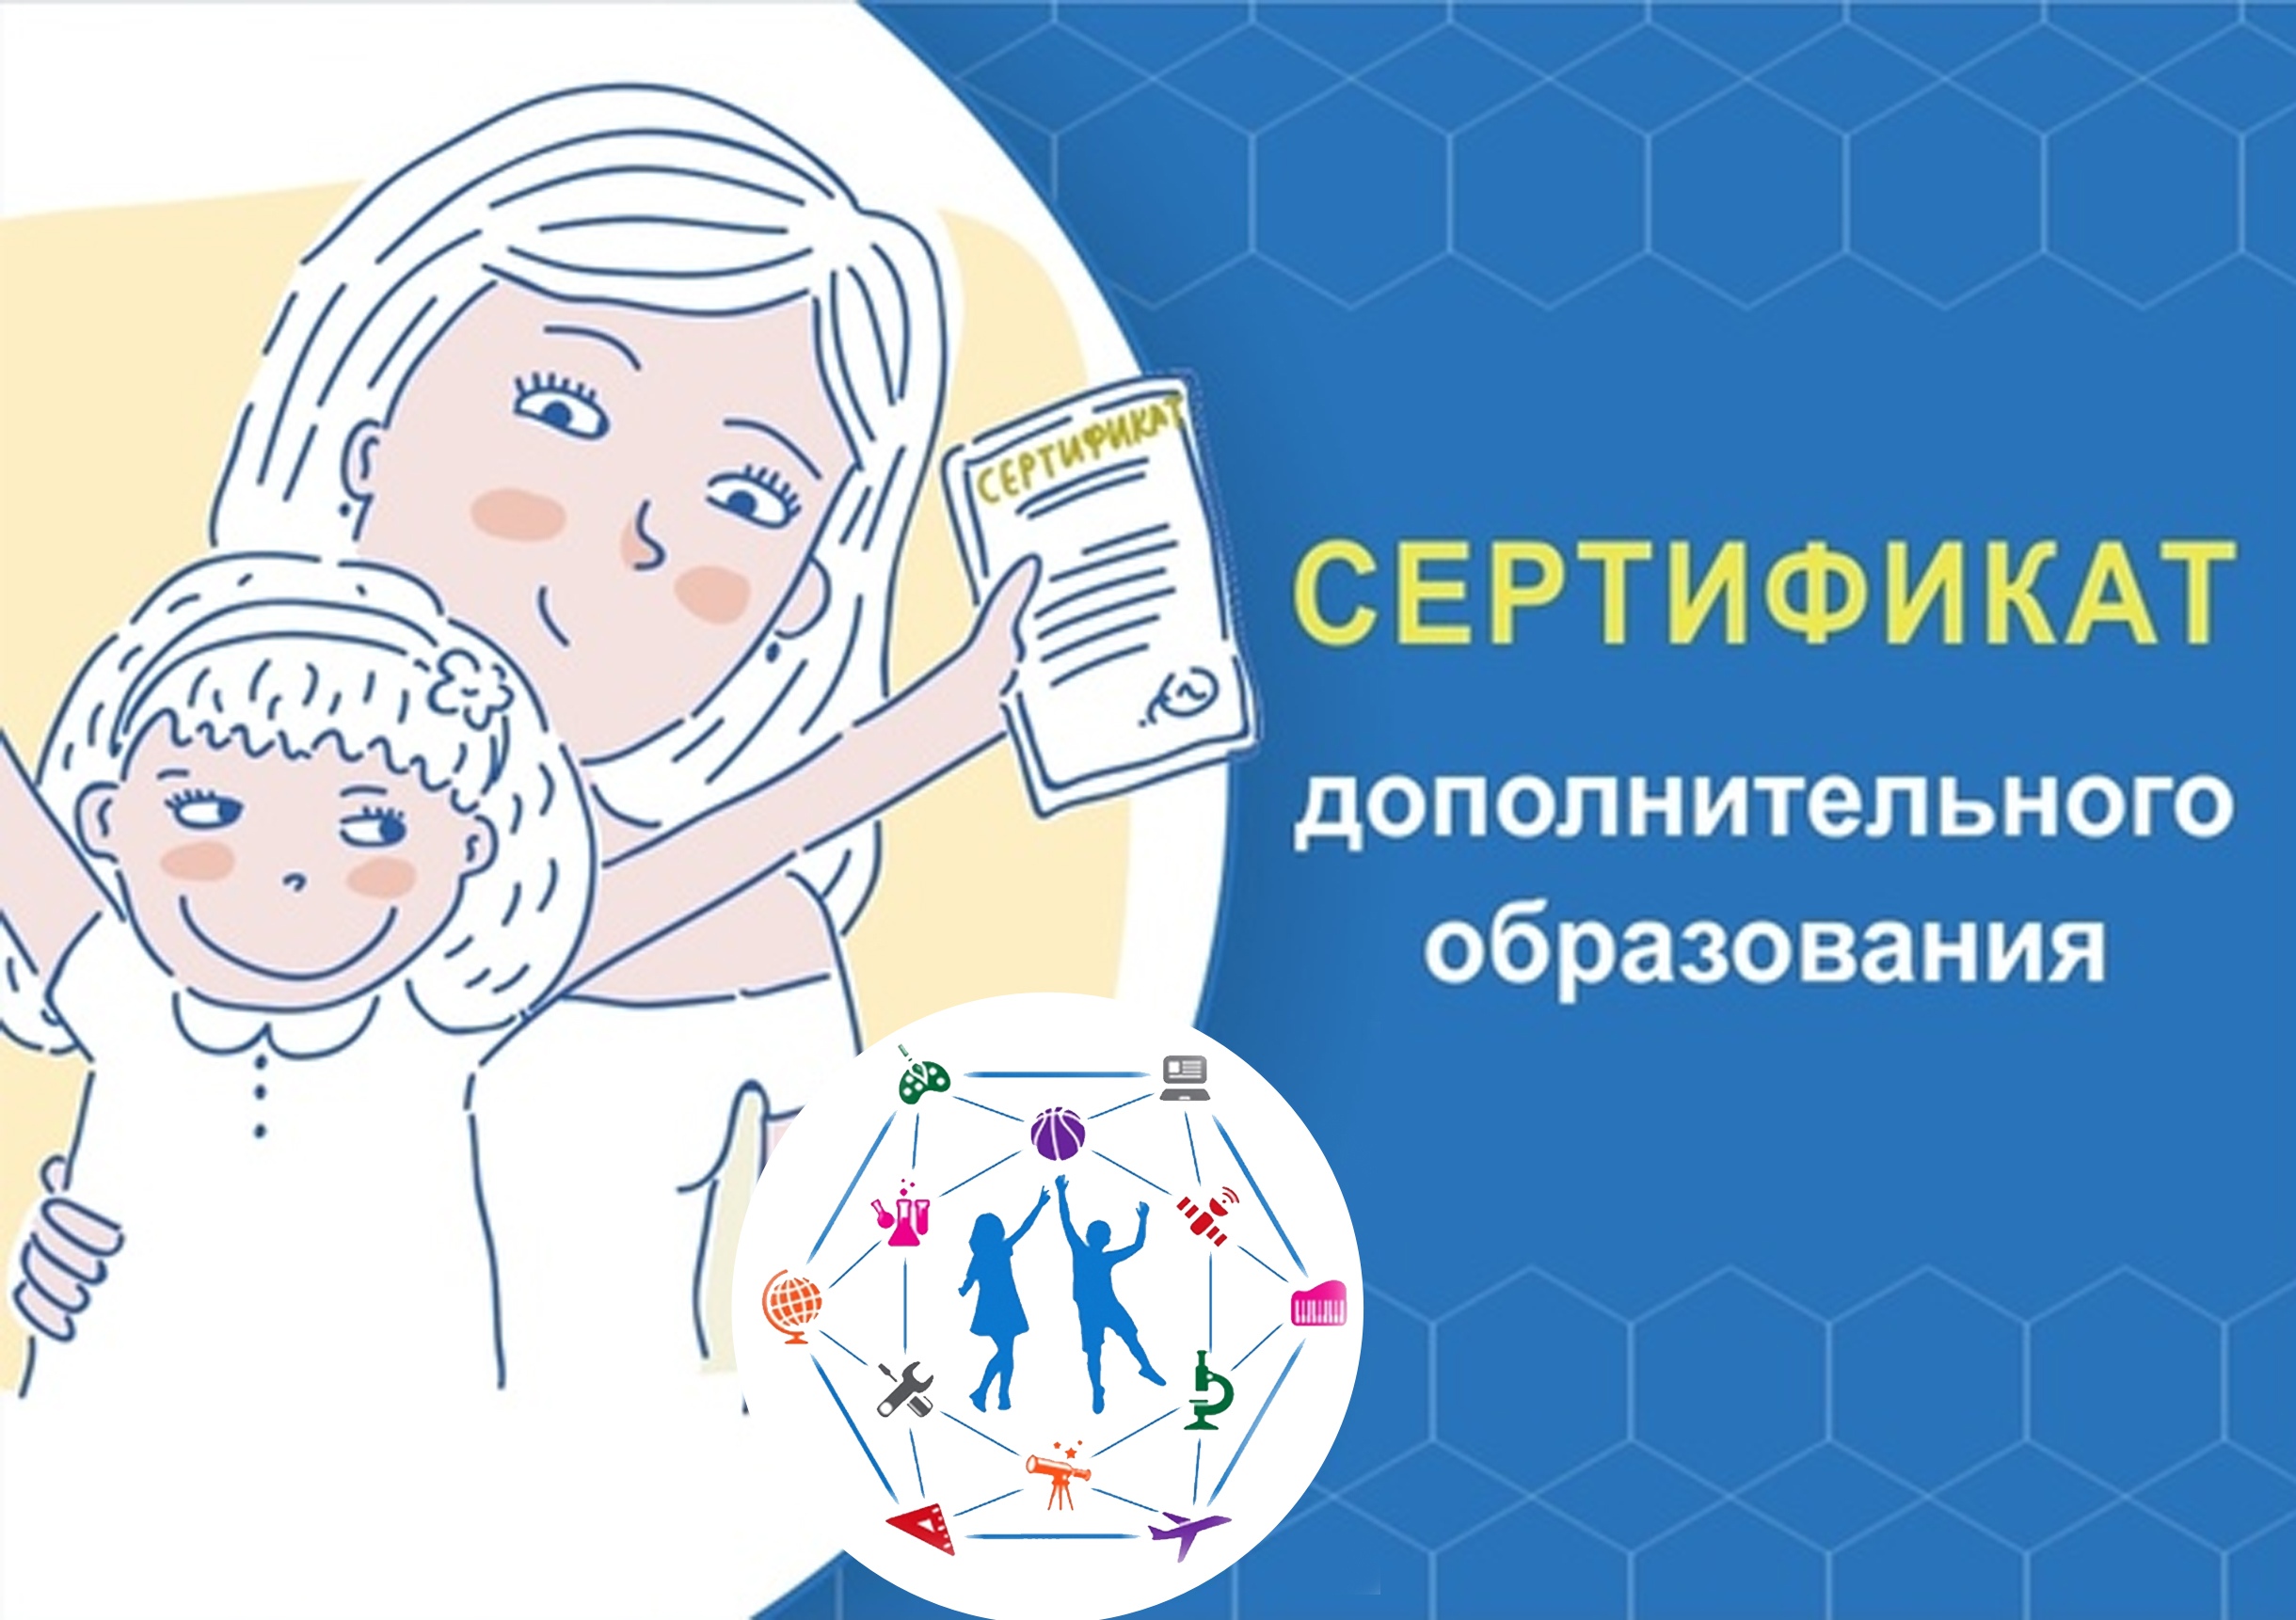 Что такое сертификаты дополнительного образования и как будет работать эта система в Севастополе?